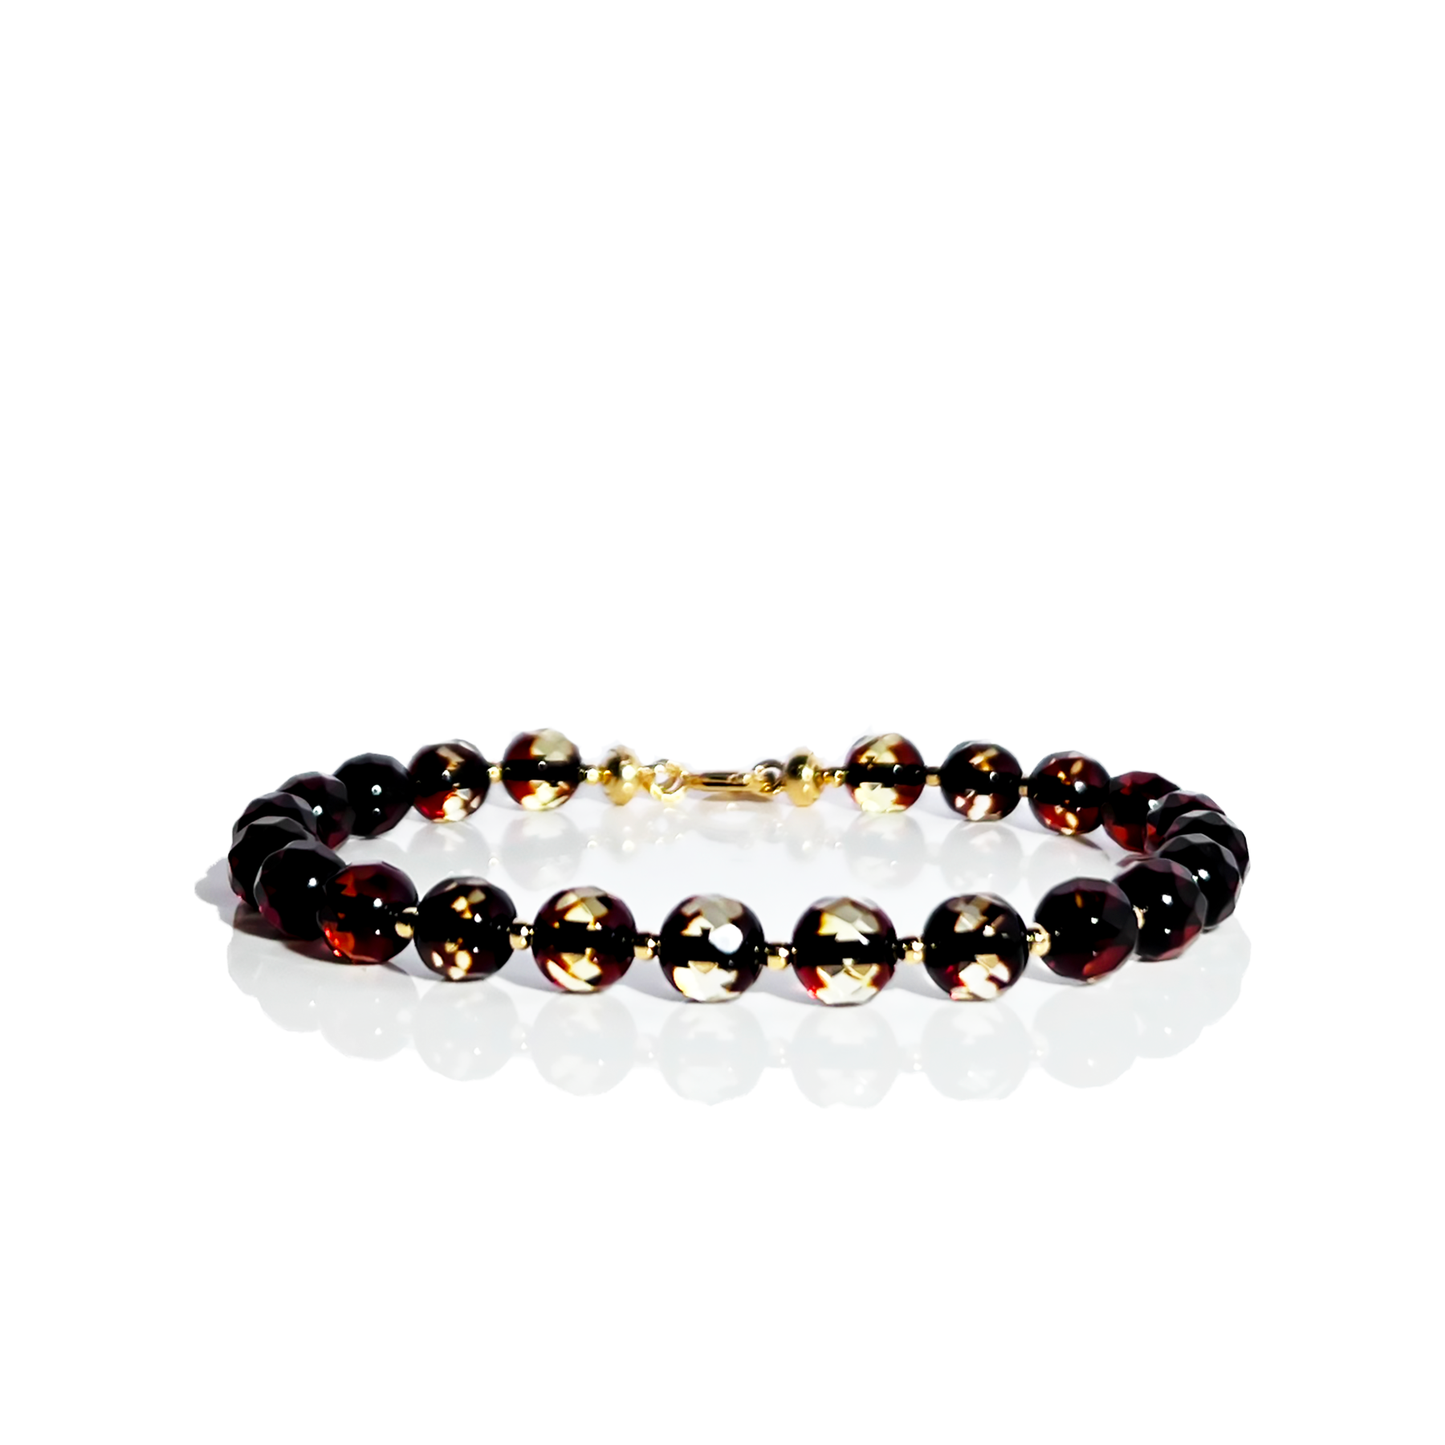 Faceted amber bracelet "Crystals"